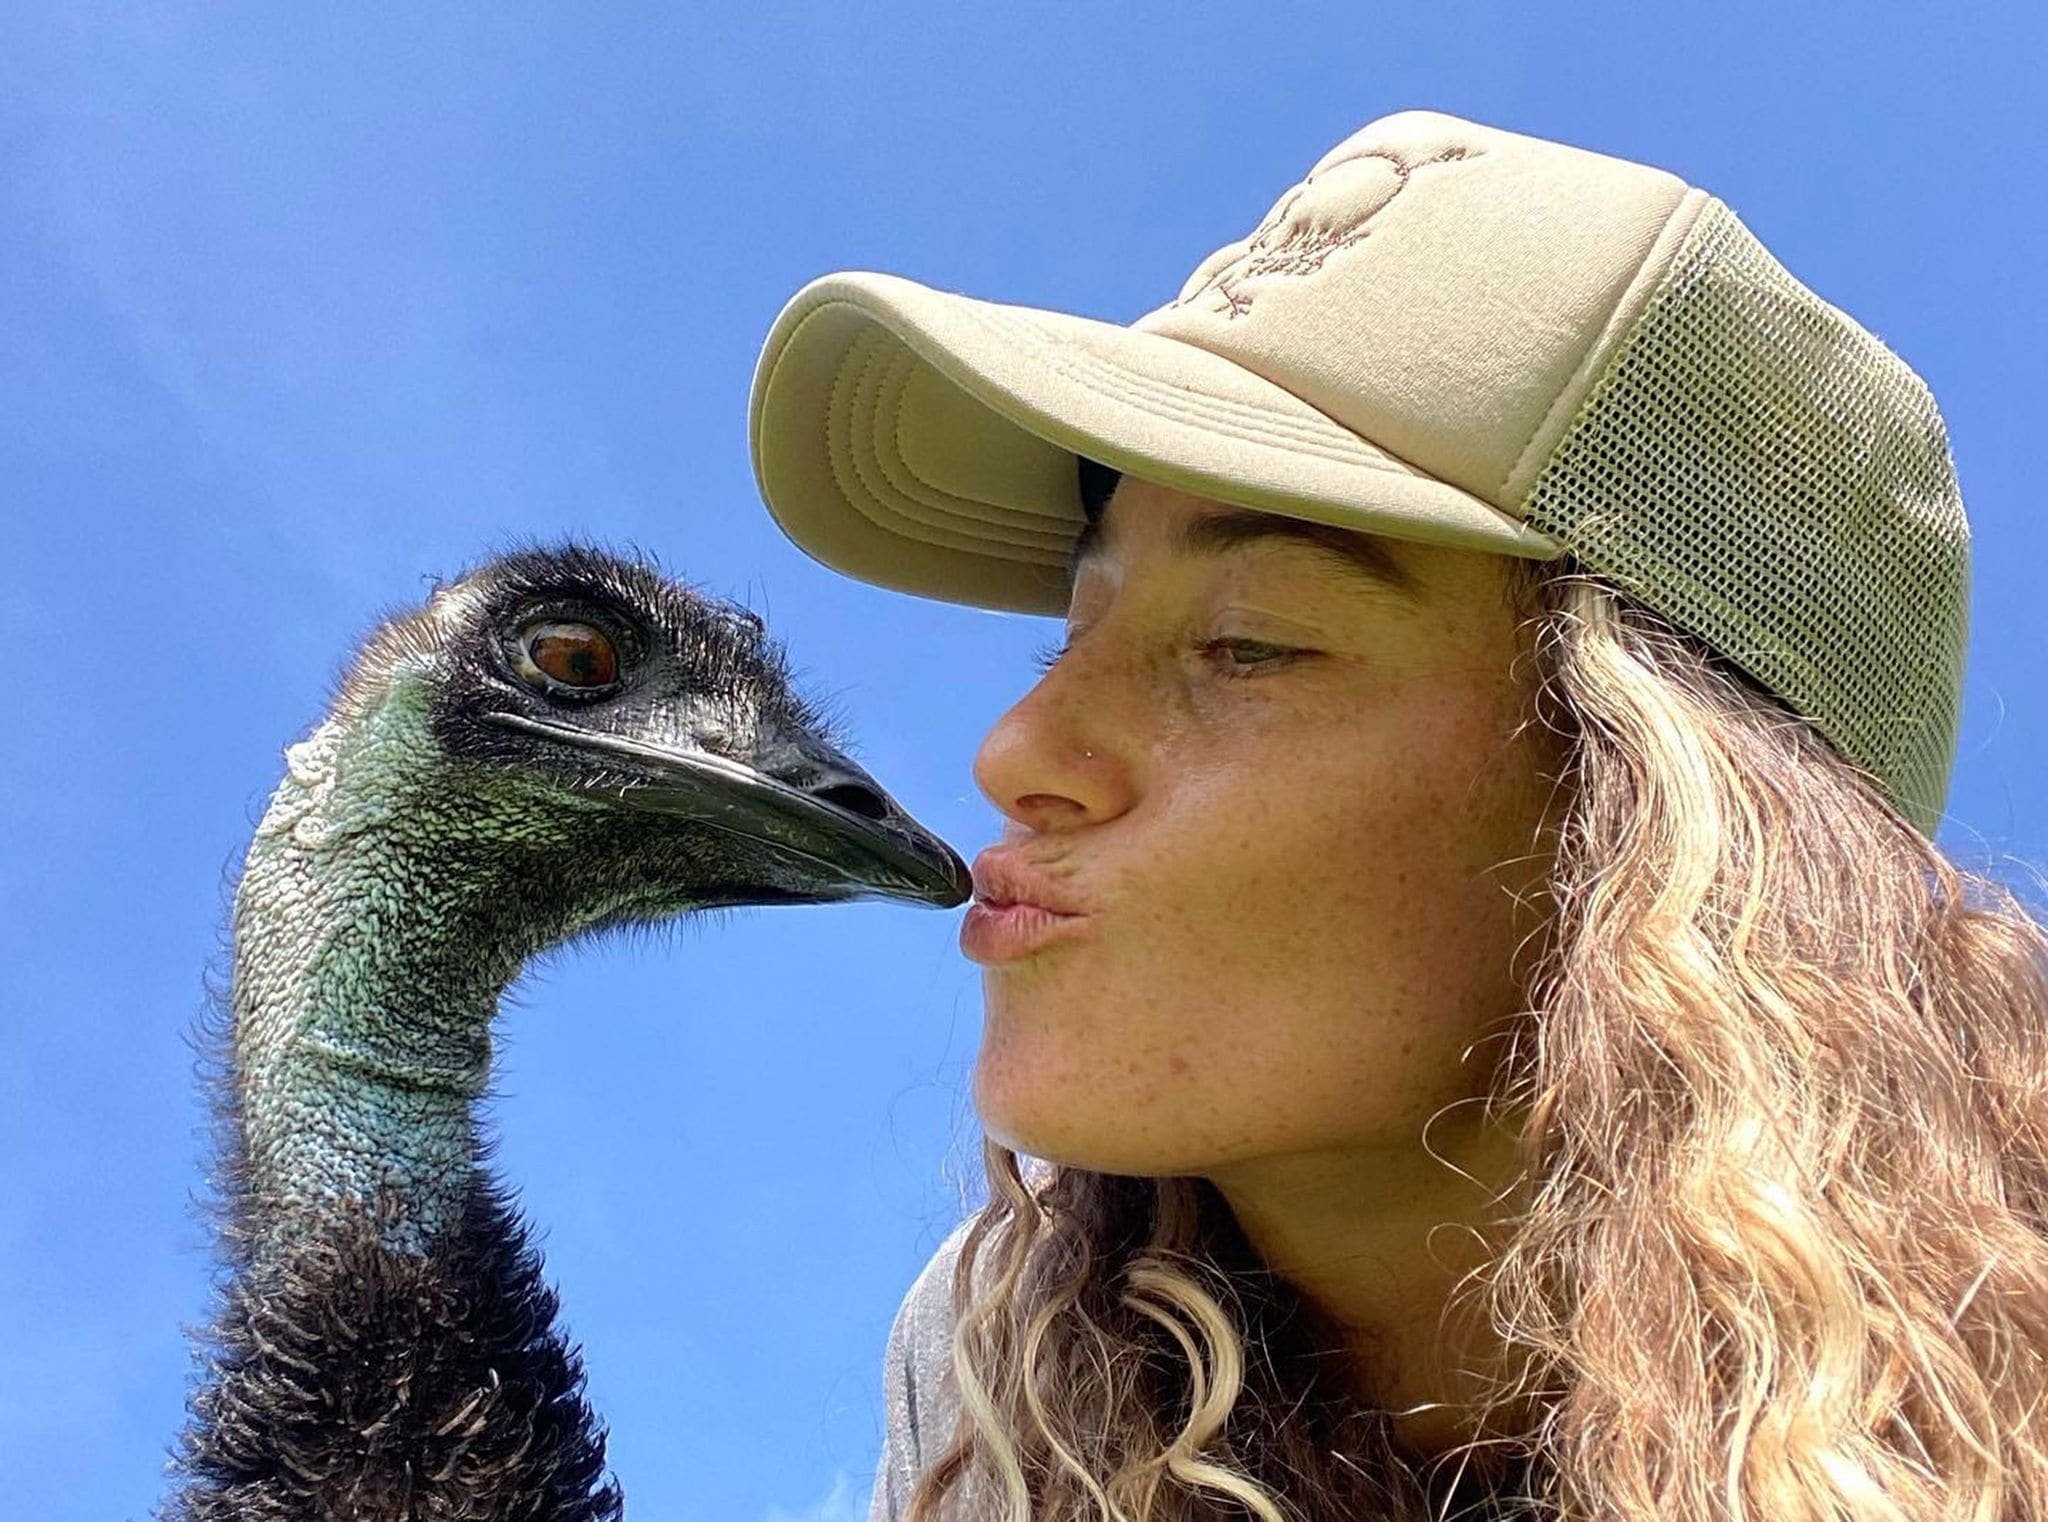 The Emu Going Viral on Social Media